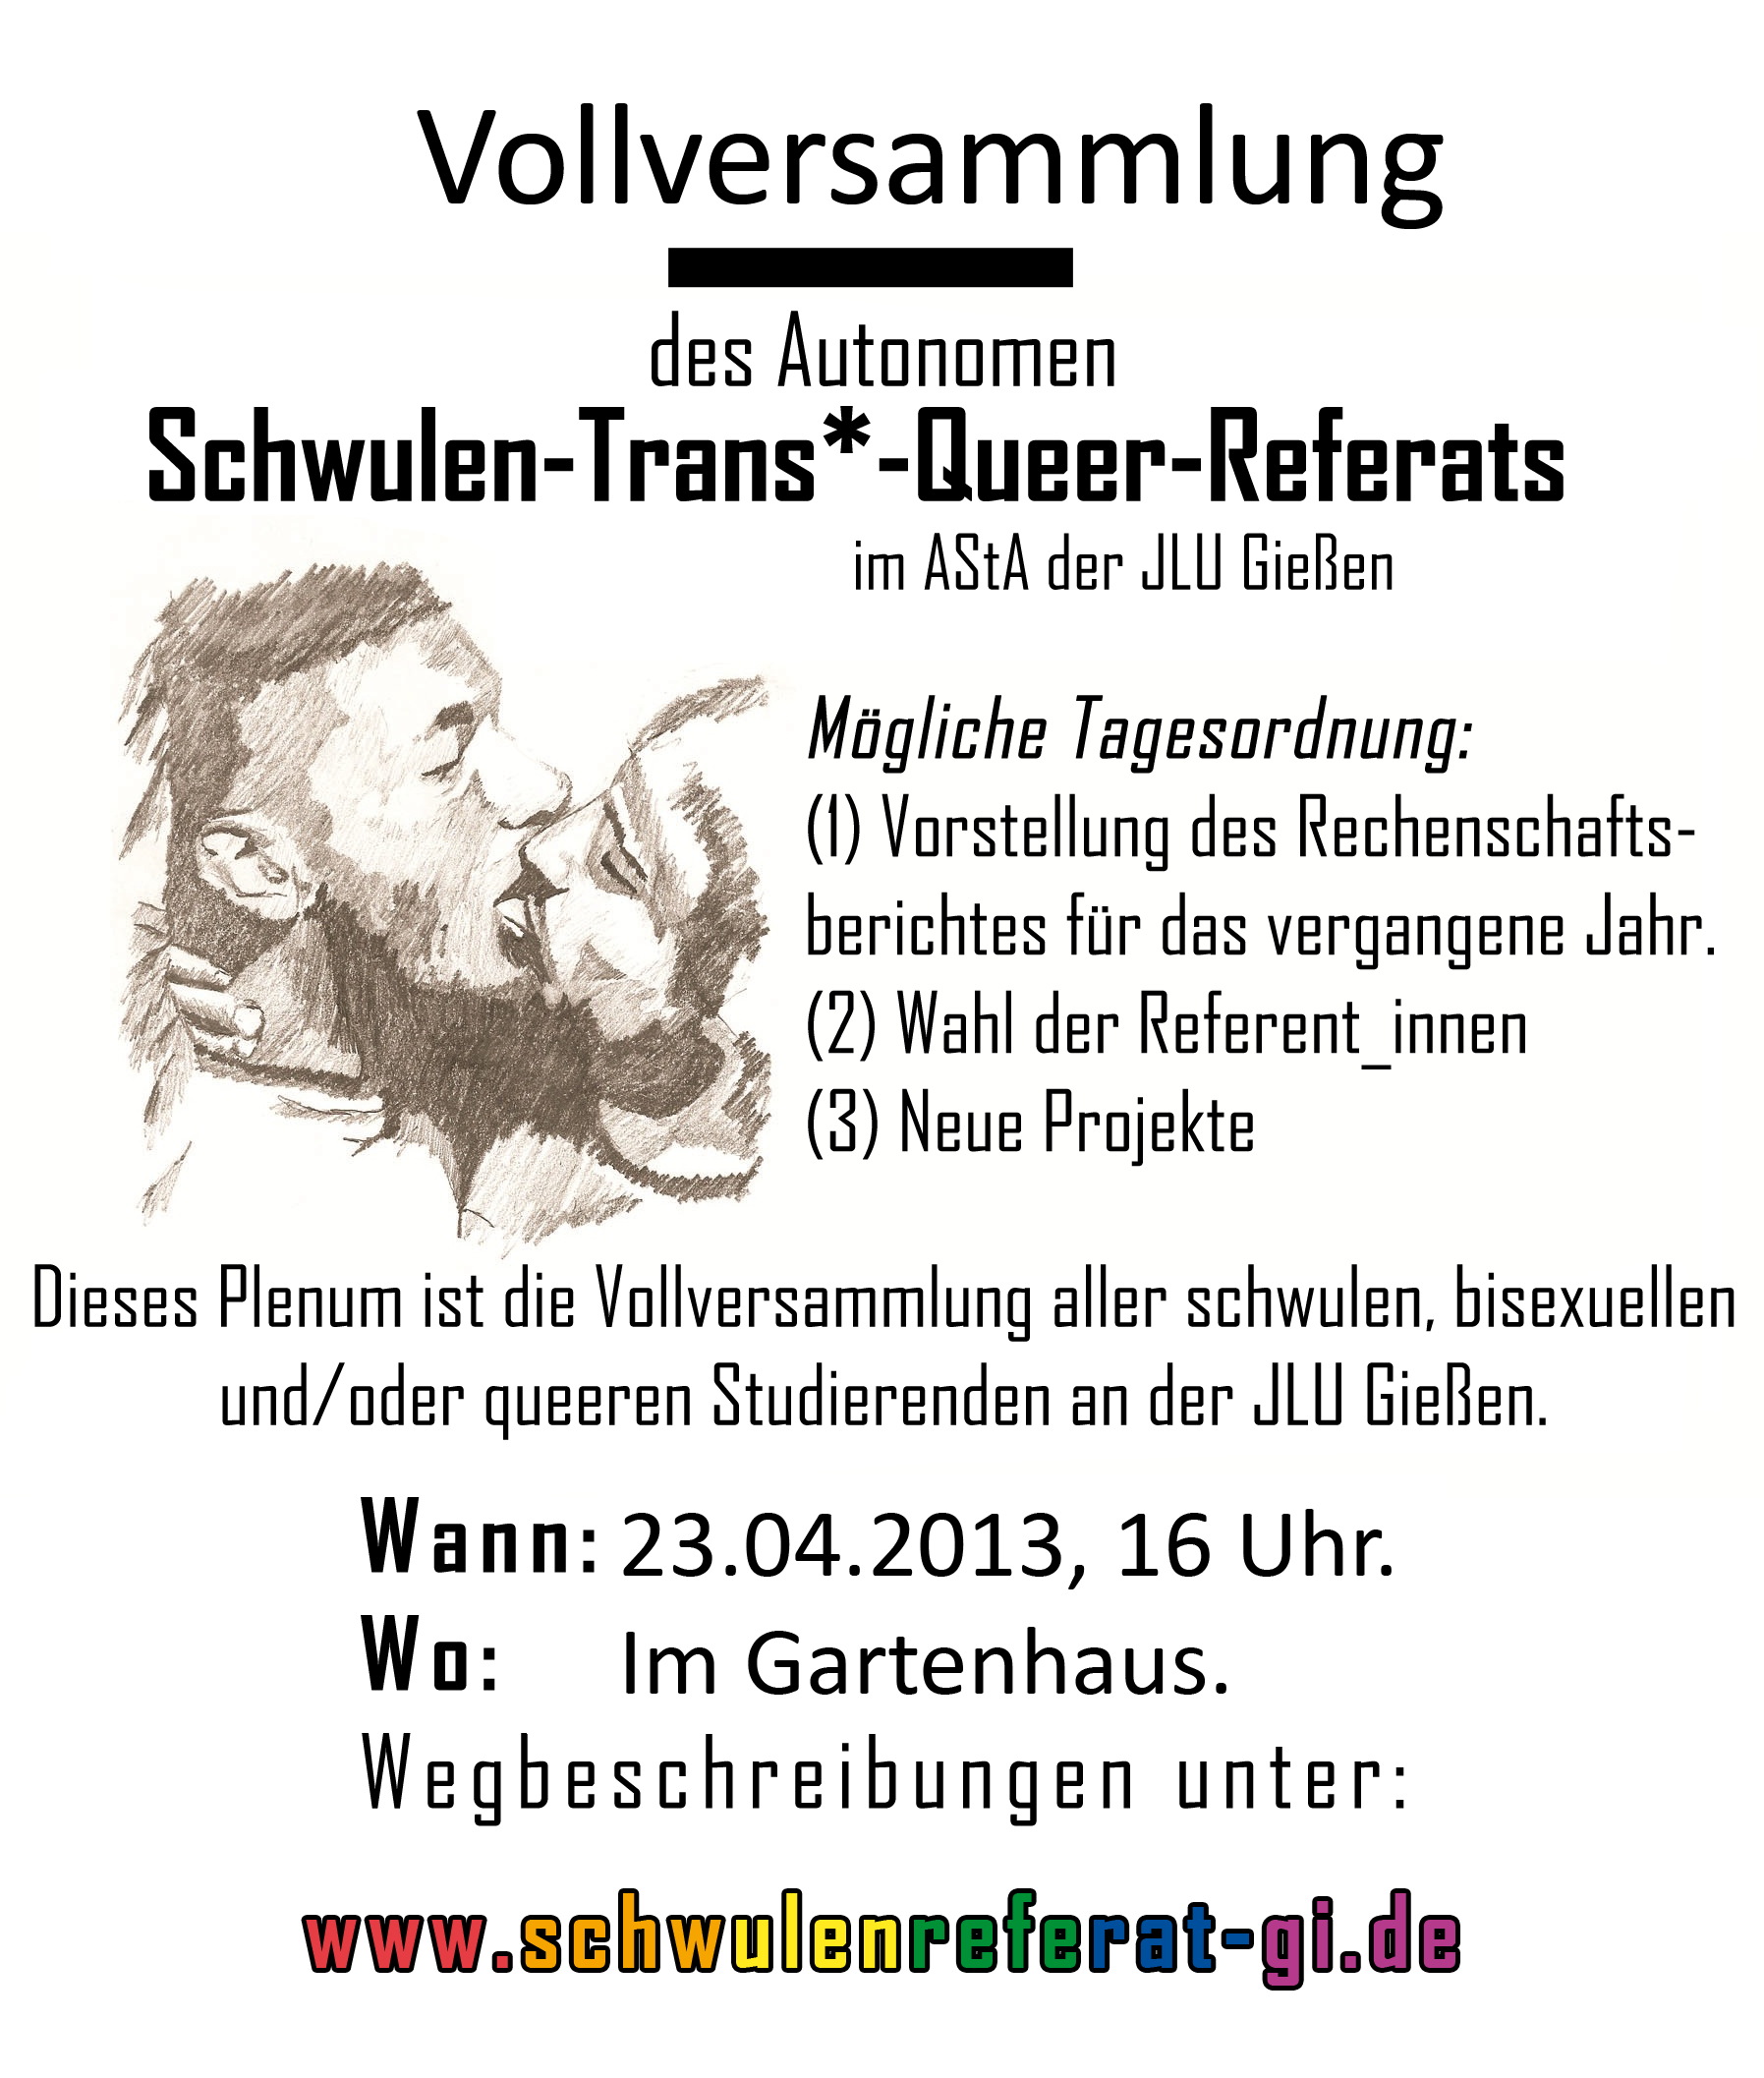 http://www.schwulenreferat-gi.de/wp-content/uploads/2013/04/Plakat-Vollversammlung2013-21.png